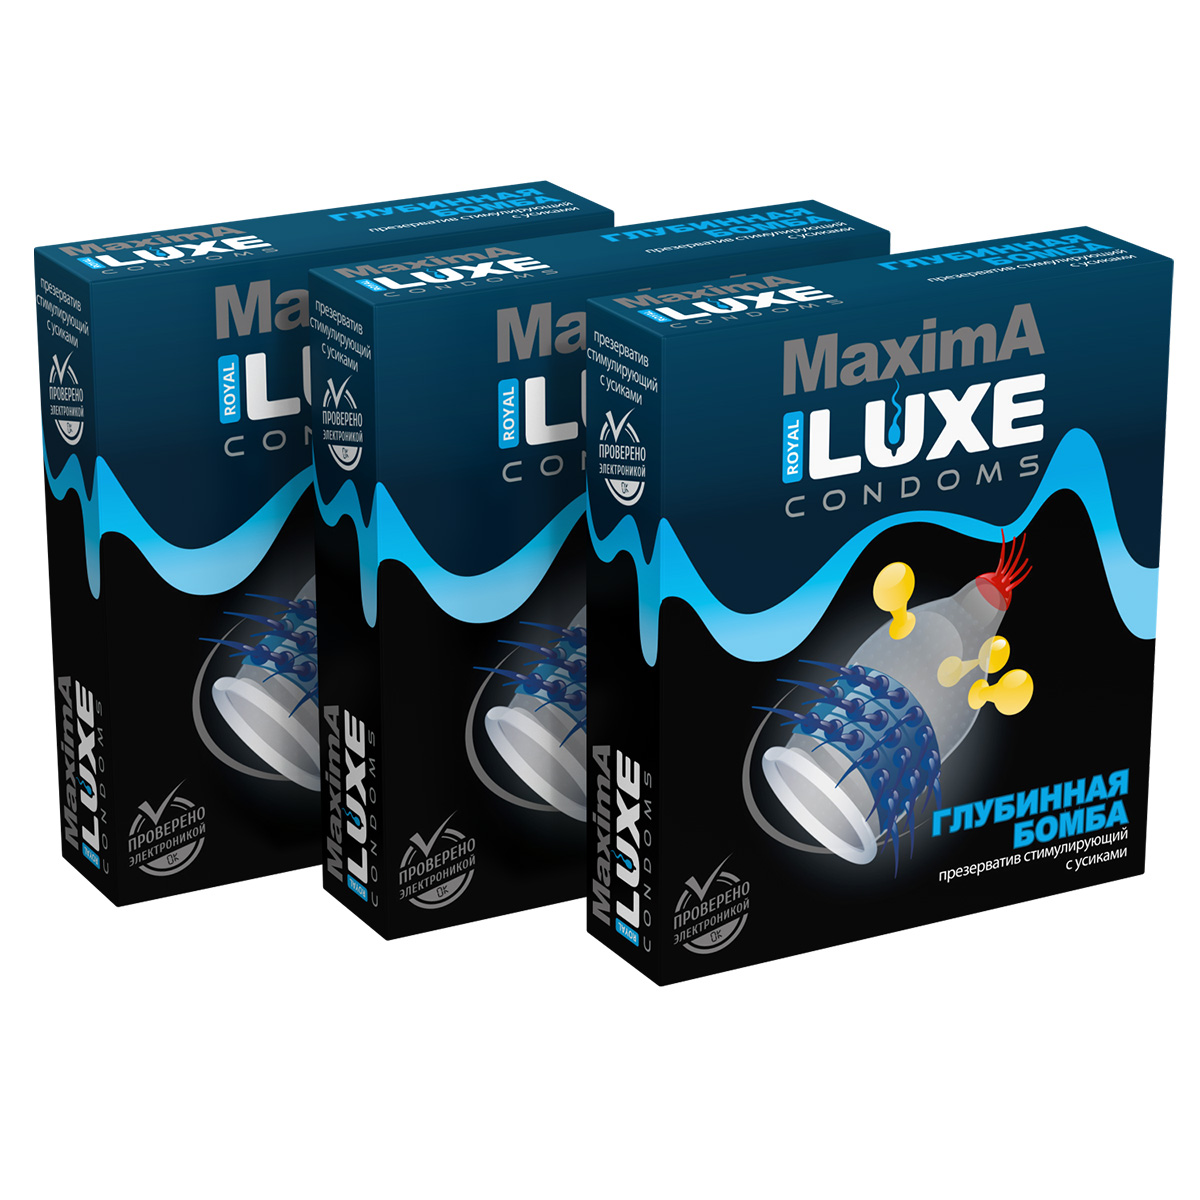 Презервативы Luxe Maxima Глубинная Бомба комплект из 3 упаковок